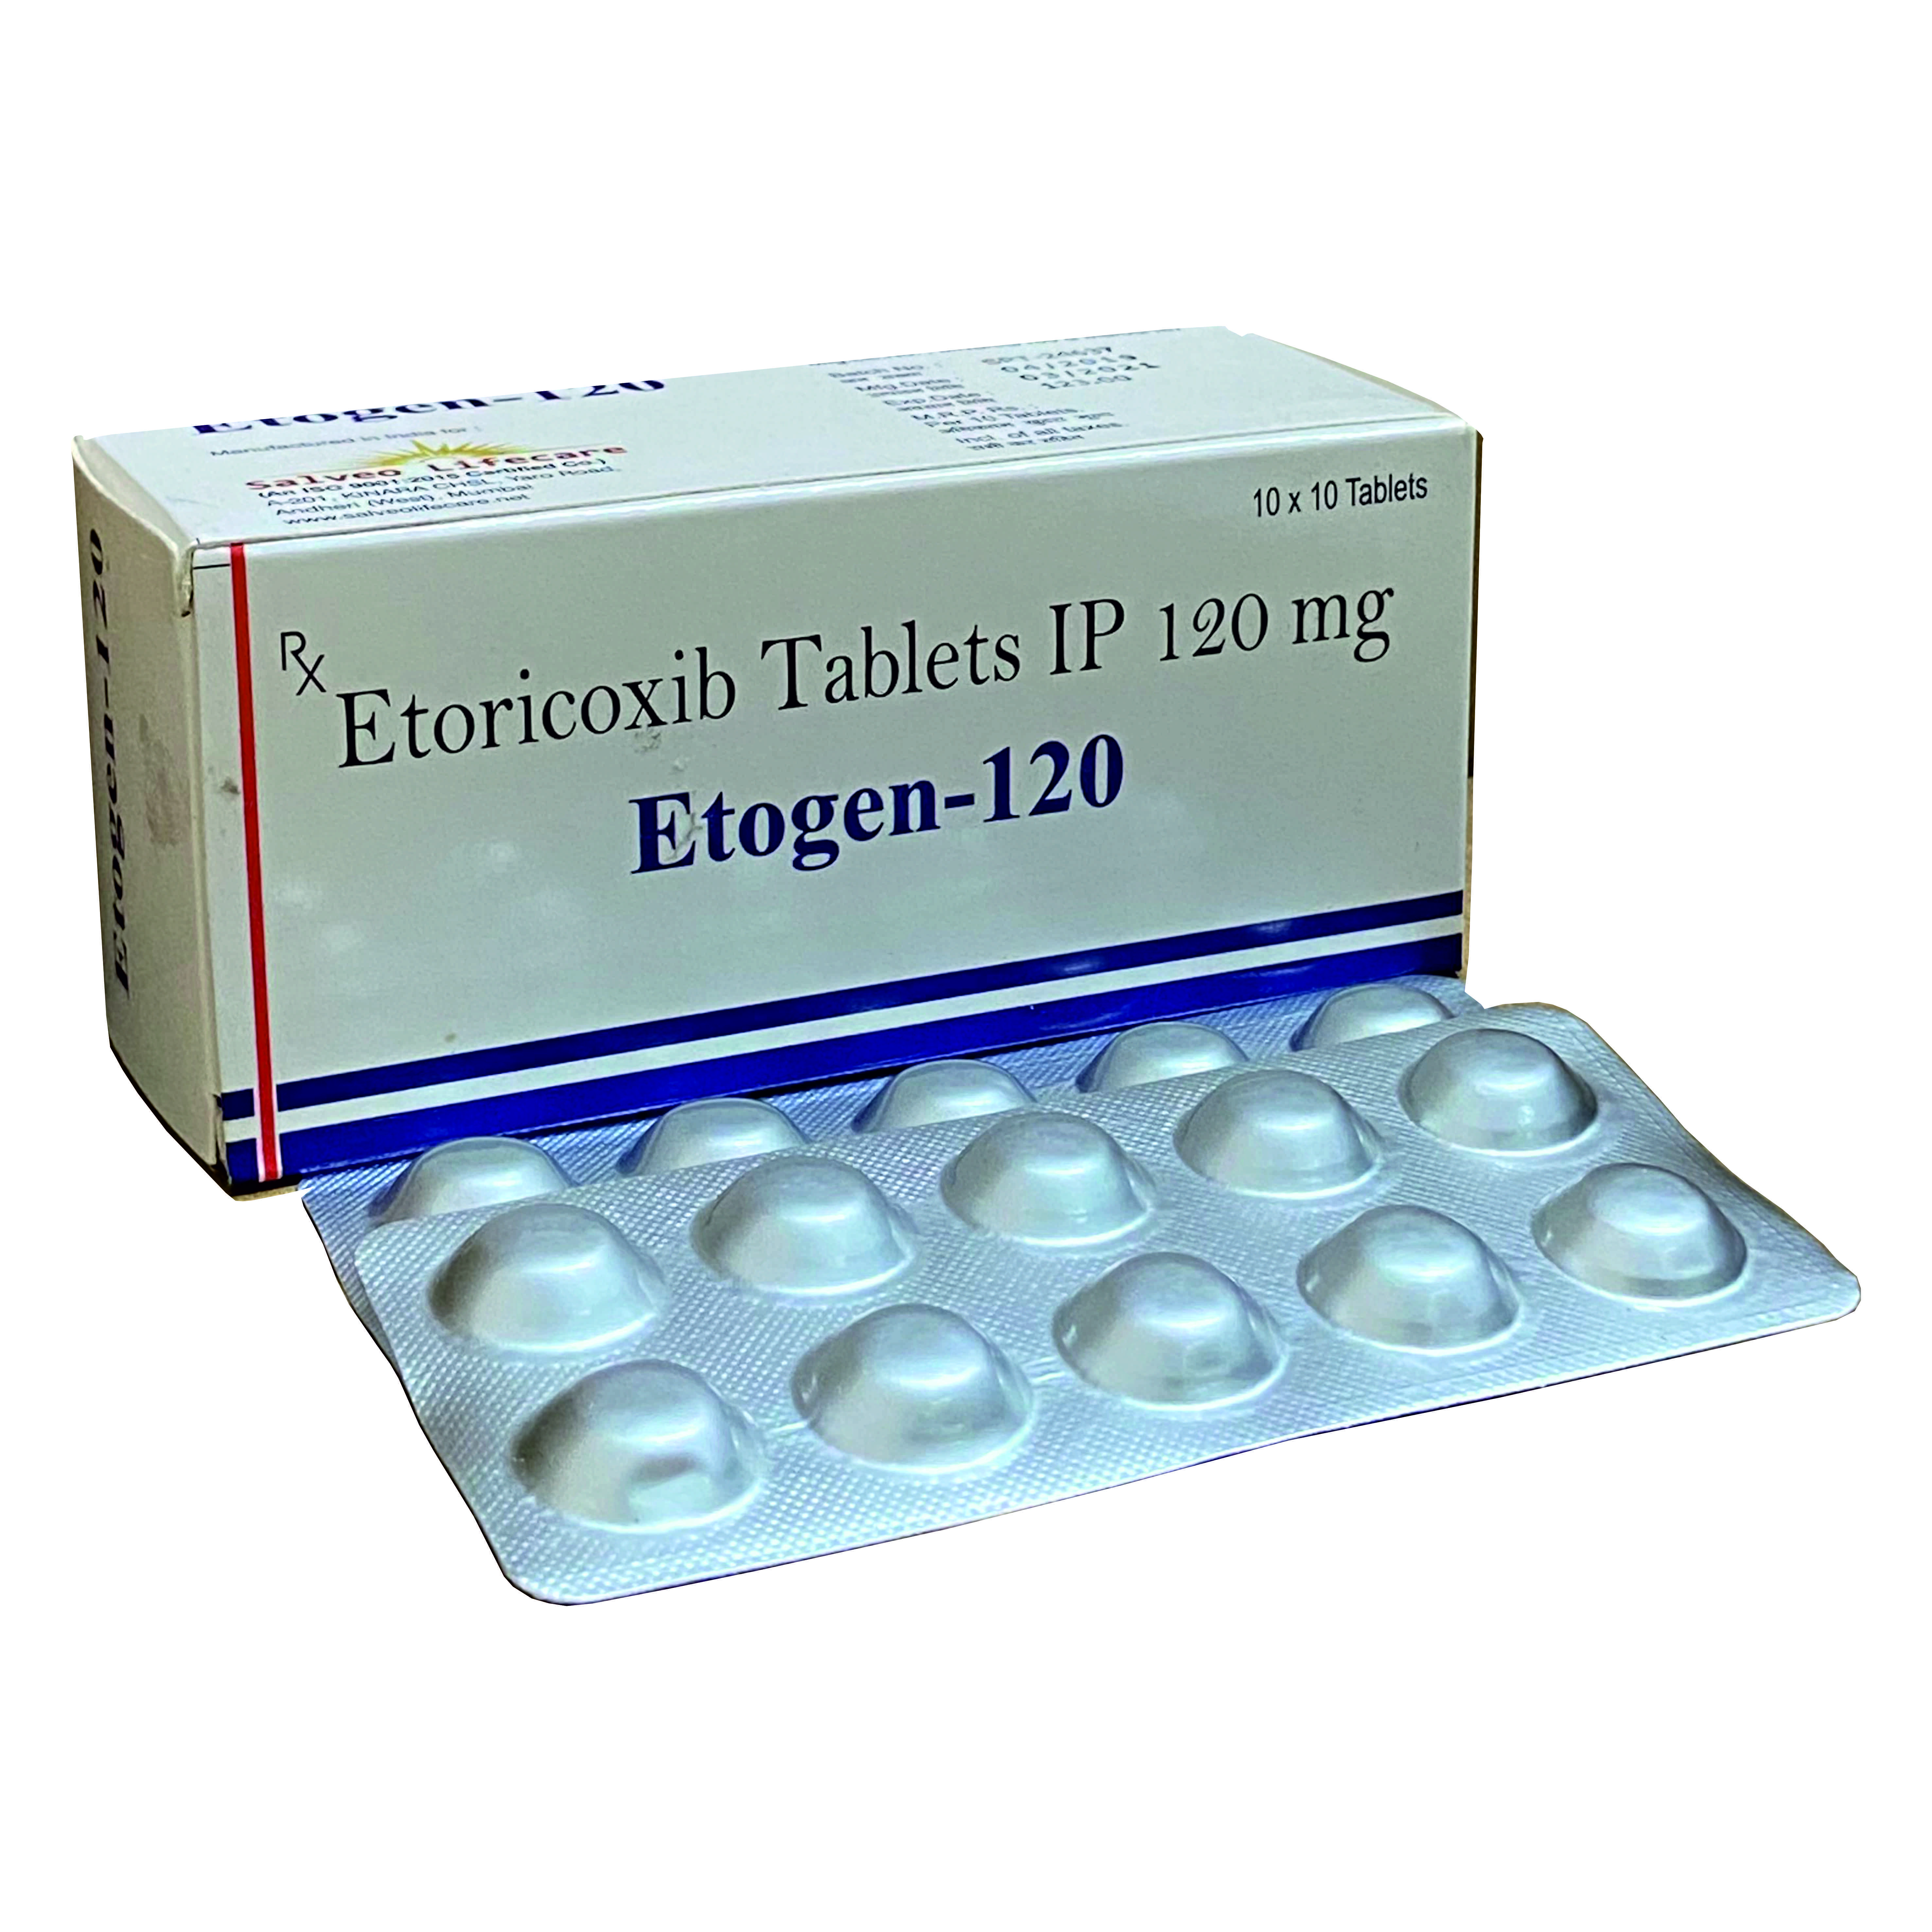 etoricoxib-120 mg